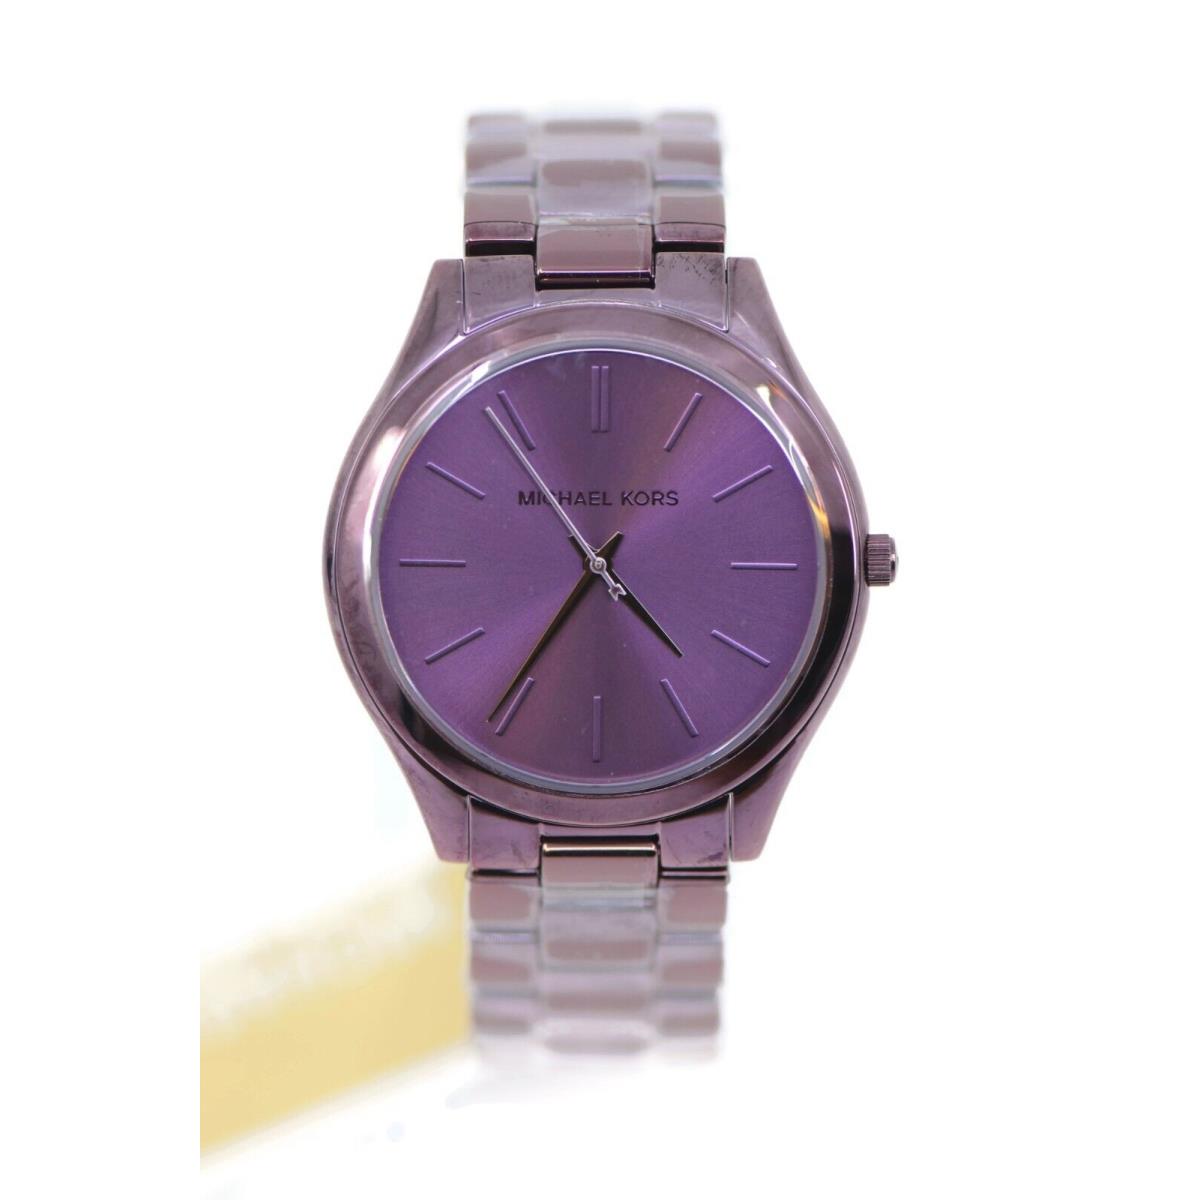 Michael Kors Slim Runway Stainless Steel Watch MK4415 - Dial: Purple